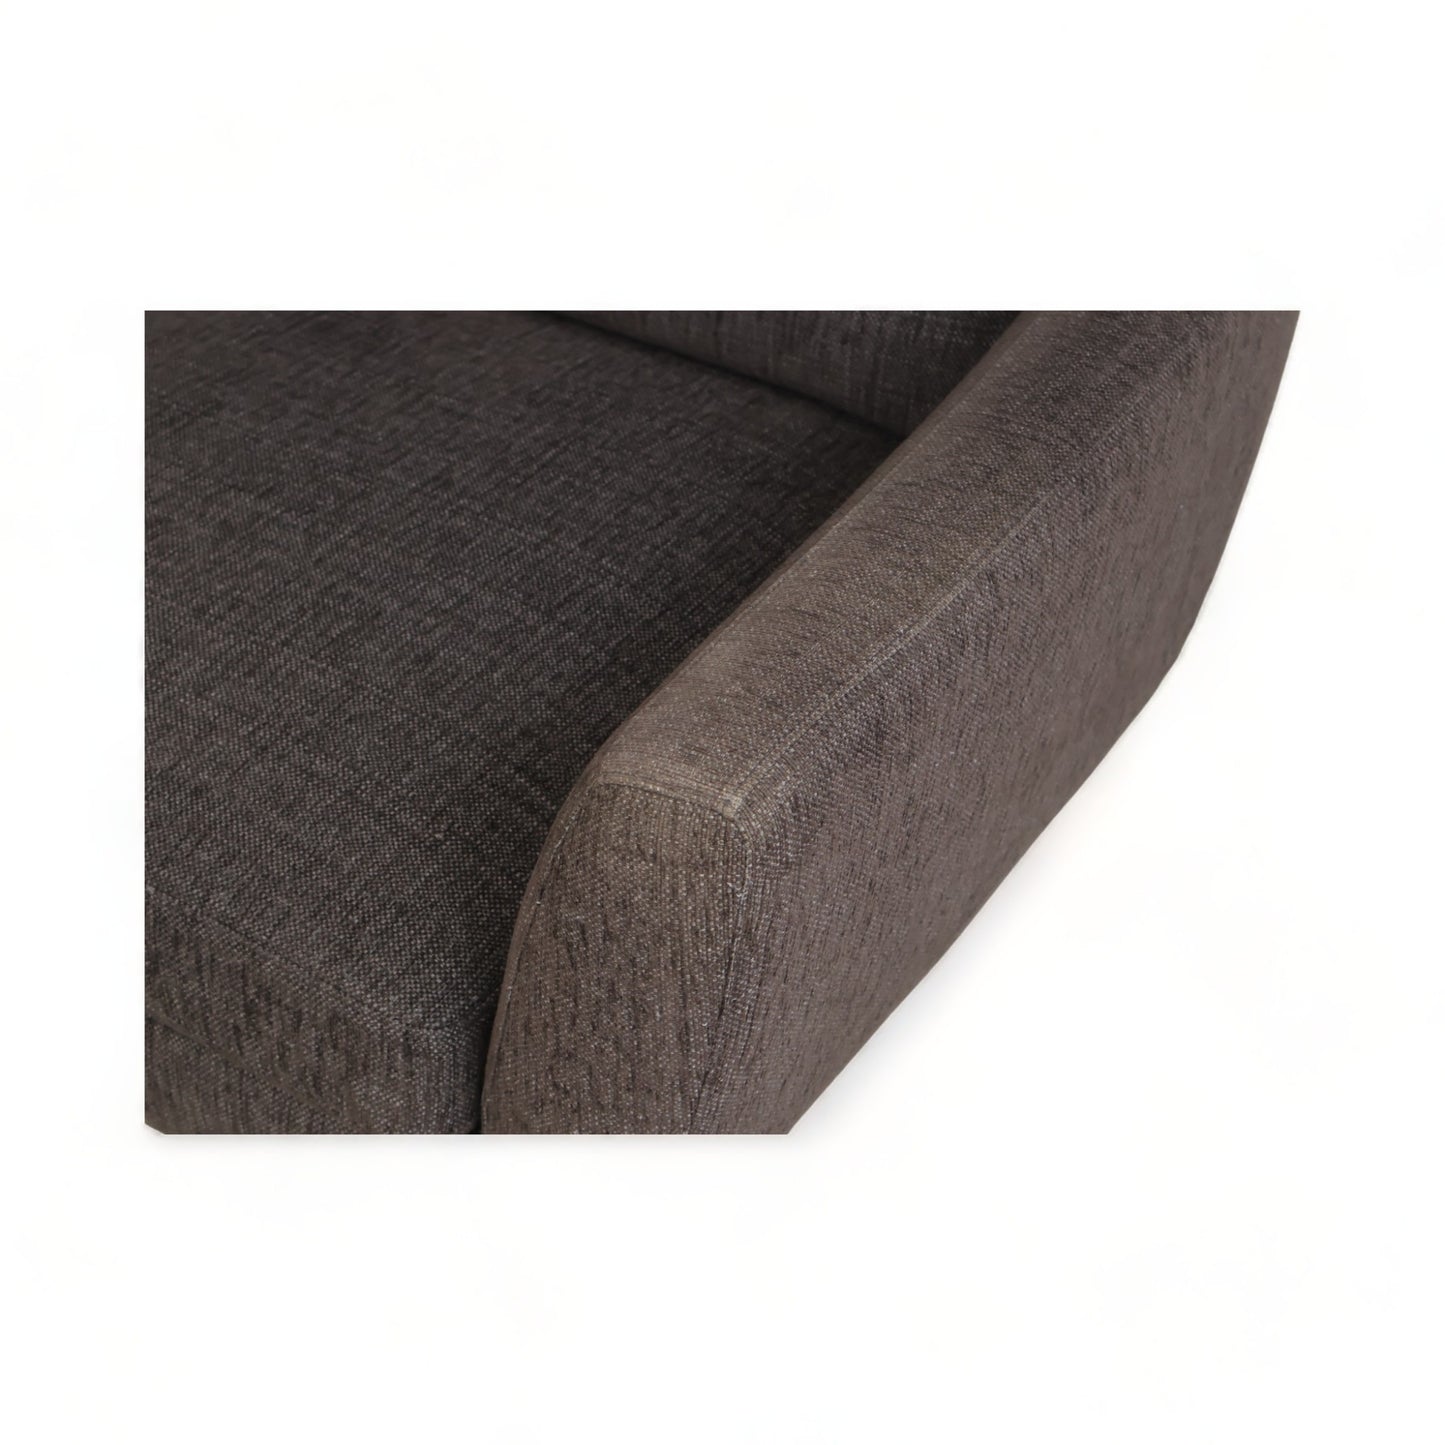 Nyrenset | Mørk brun Furninova 3-seter sofa